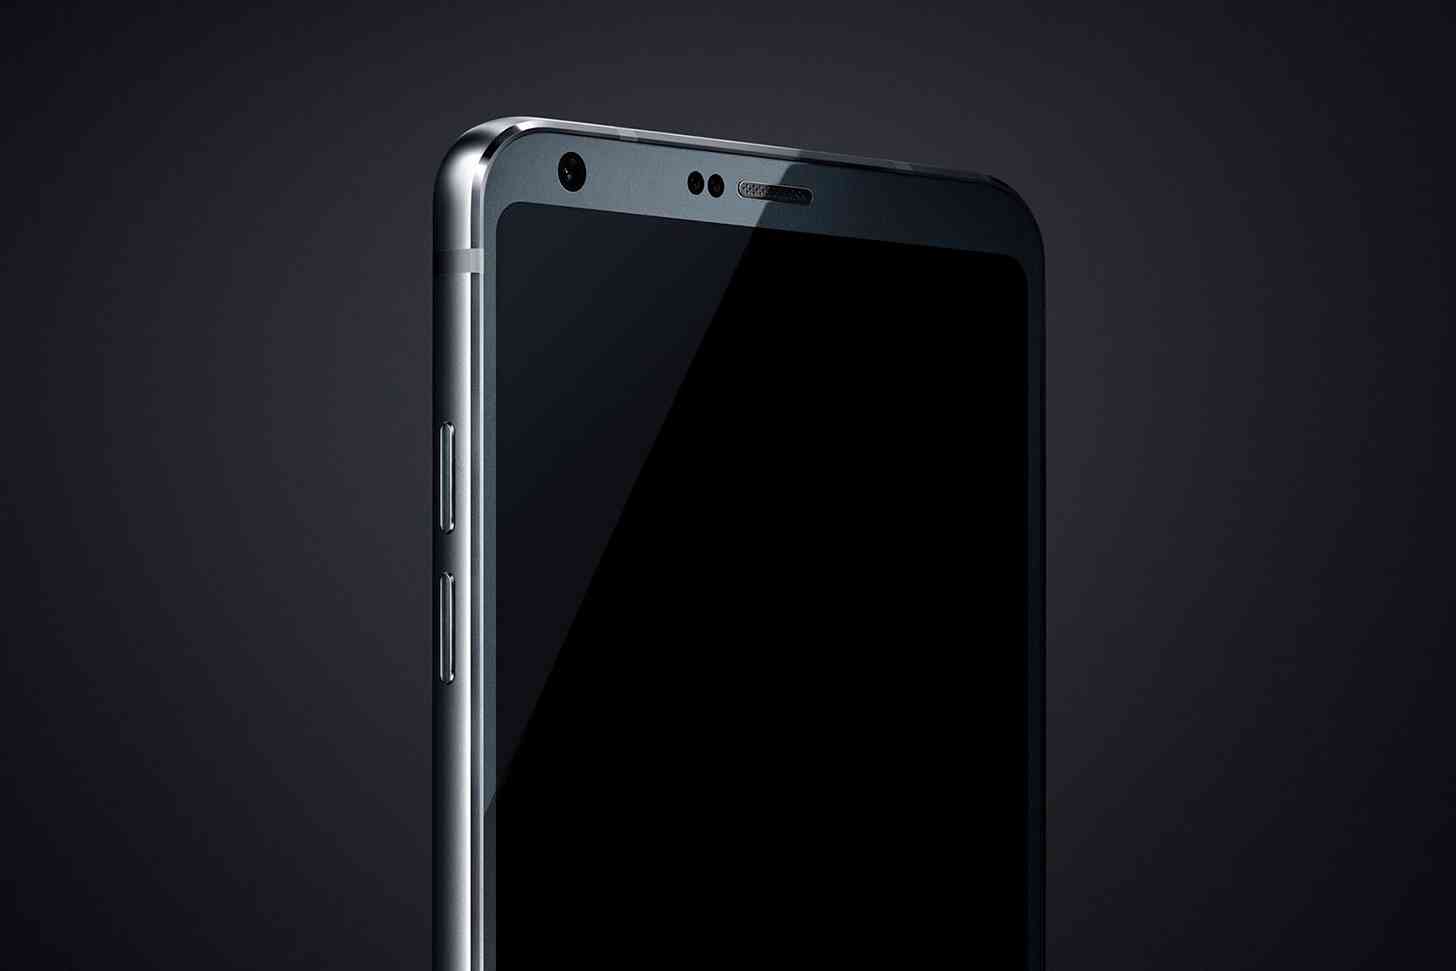 LG G6 image leak